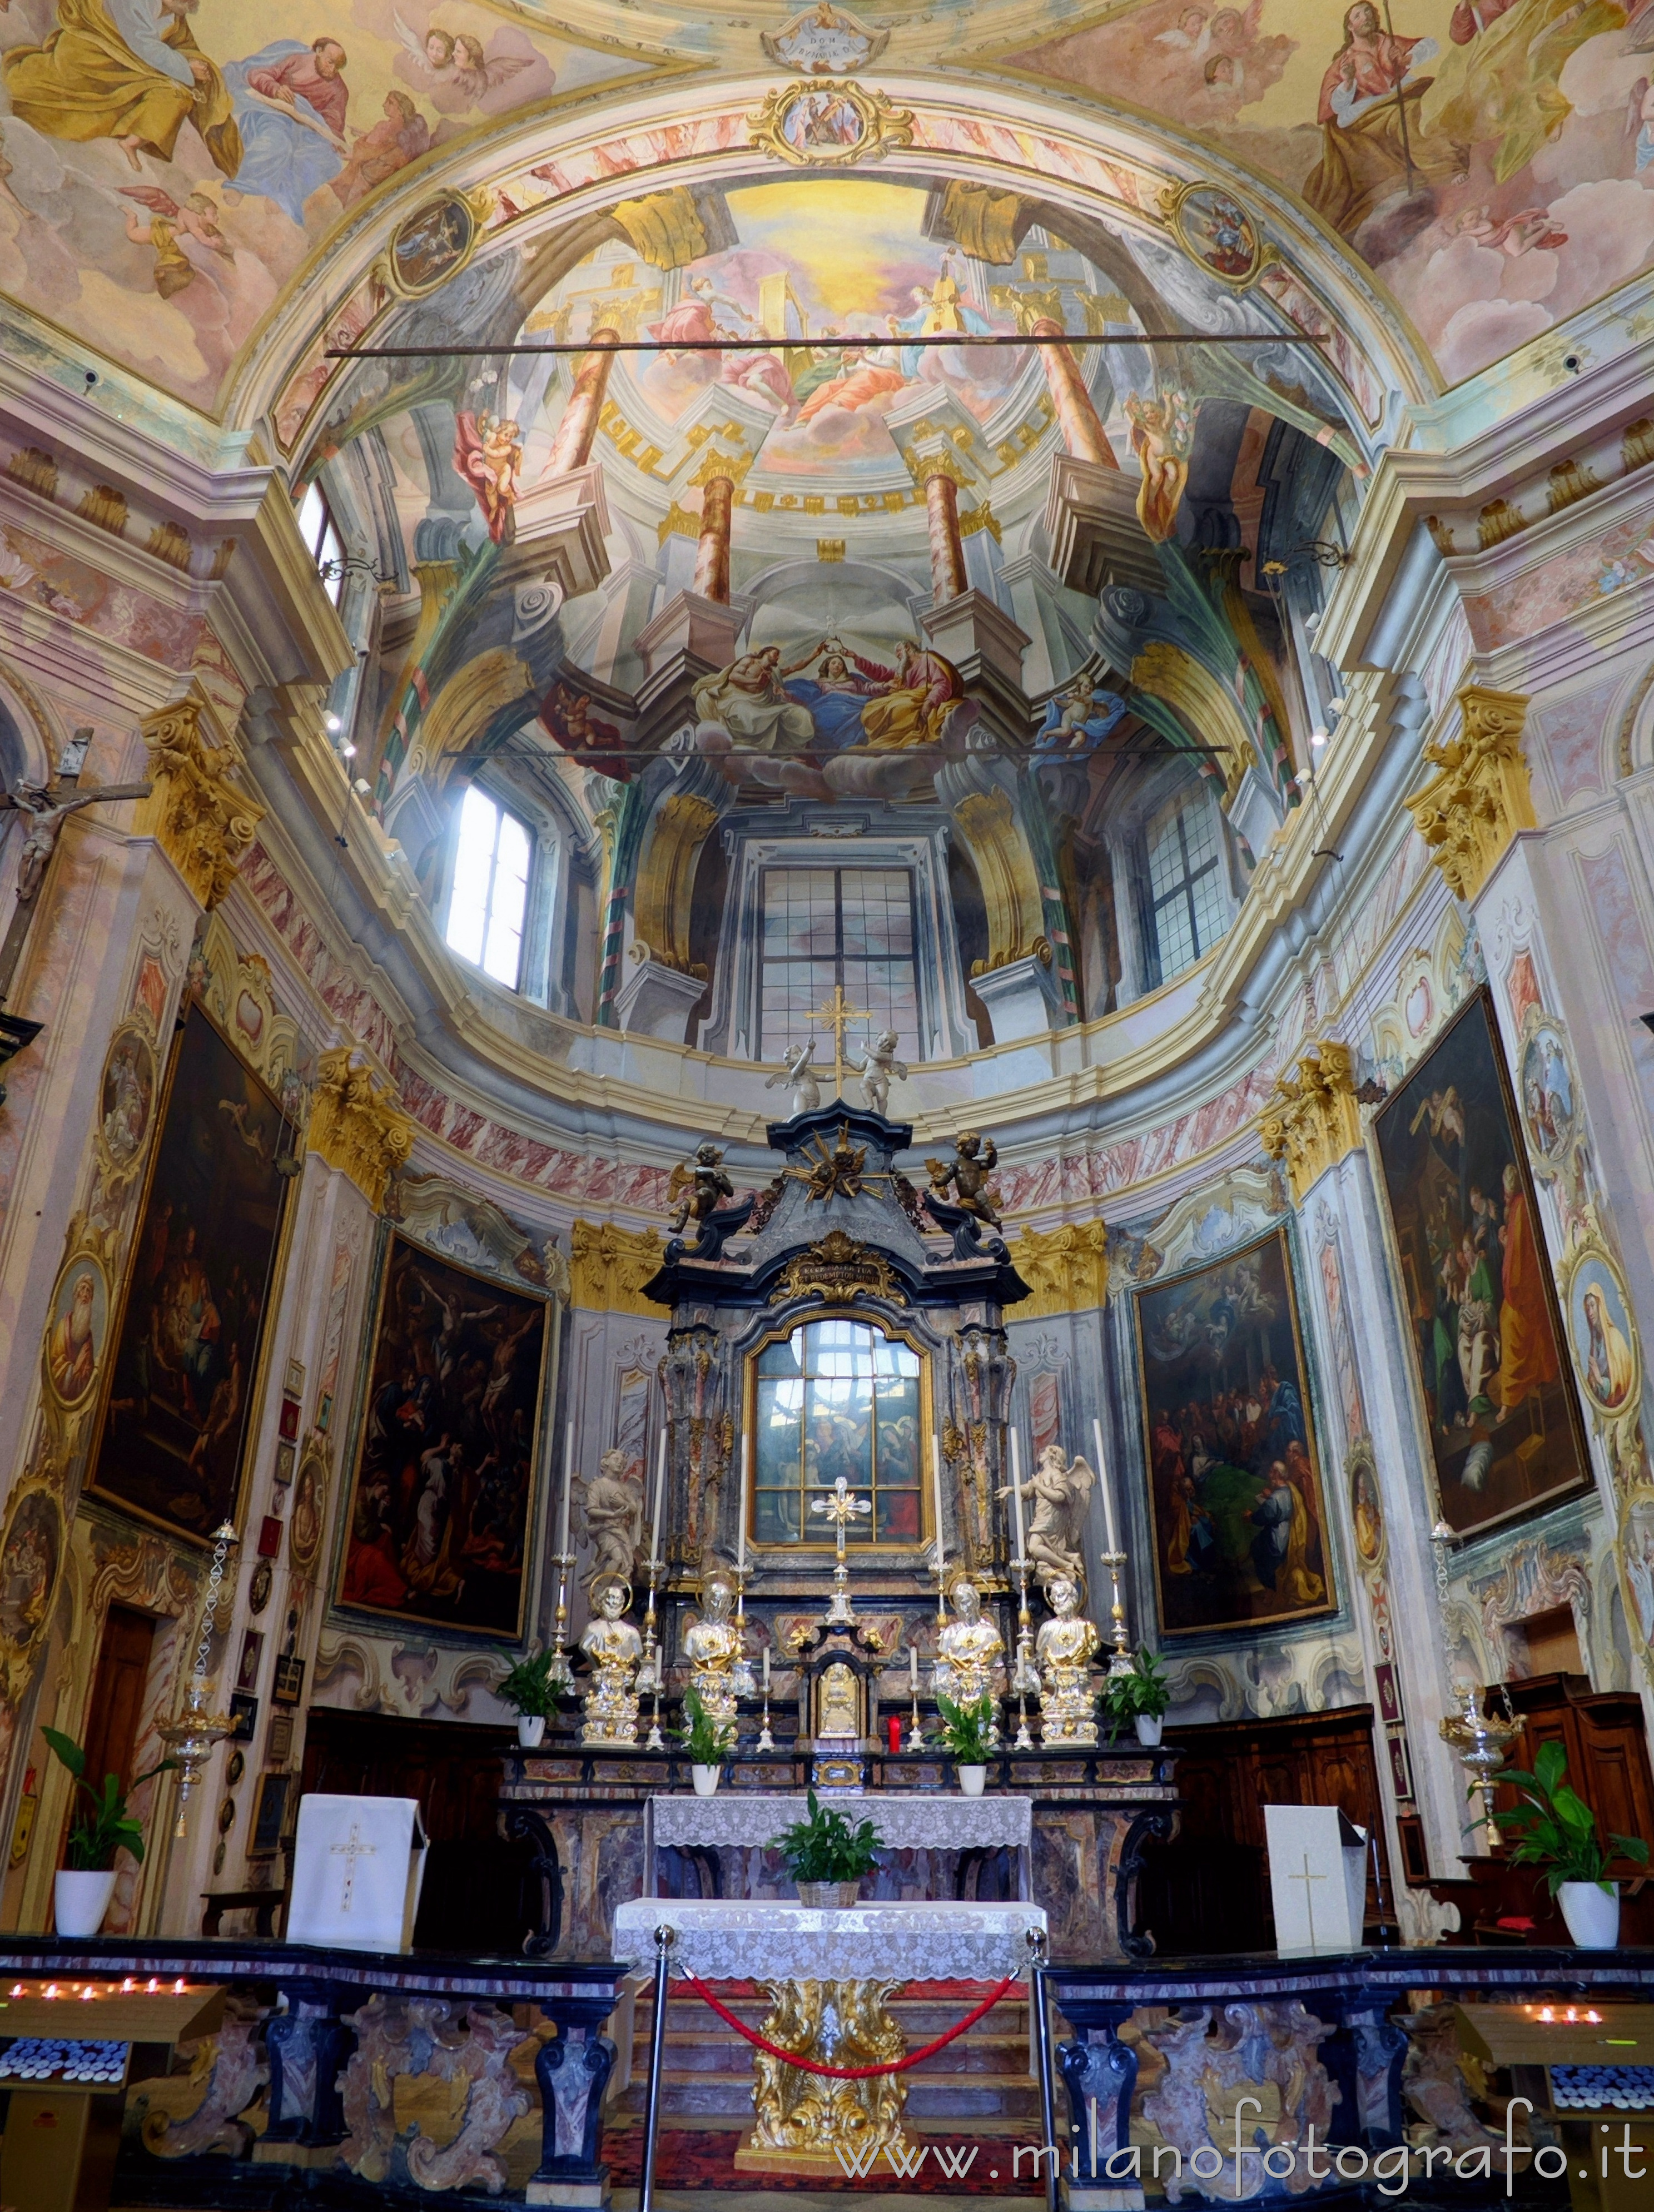 Madonna del Sasso (Verbano-Cusio-Ossola): Presbiterio e coro del Santuario della Madonna del Sasso - Madonna del Sasso (Verbano-Cusio-Ossola)